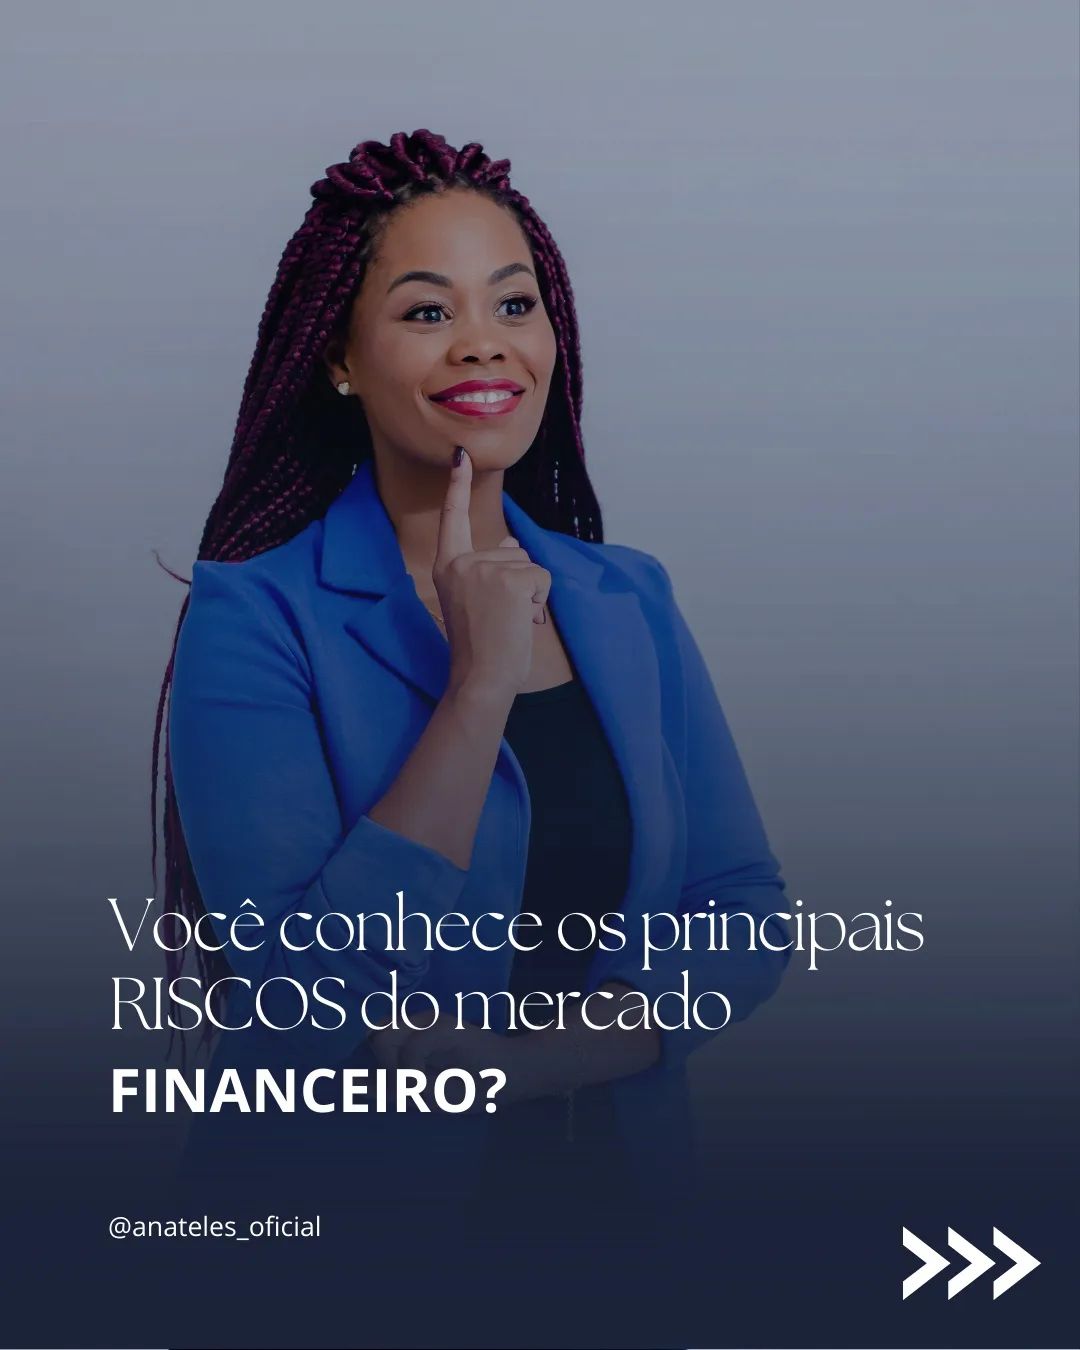 Você conhece os principais RISCOS no mercado financeiro?